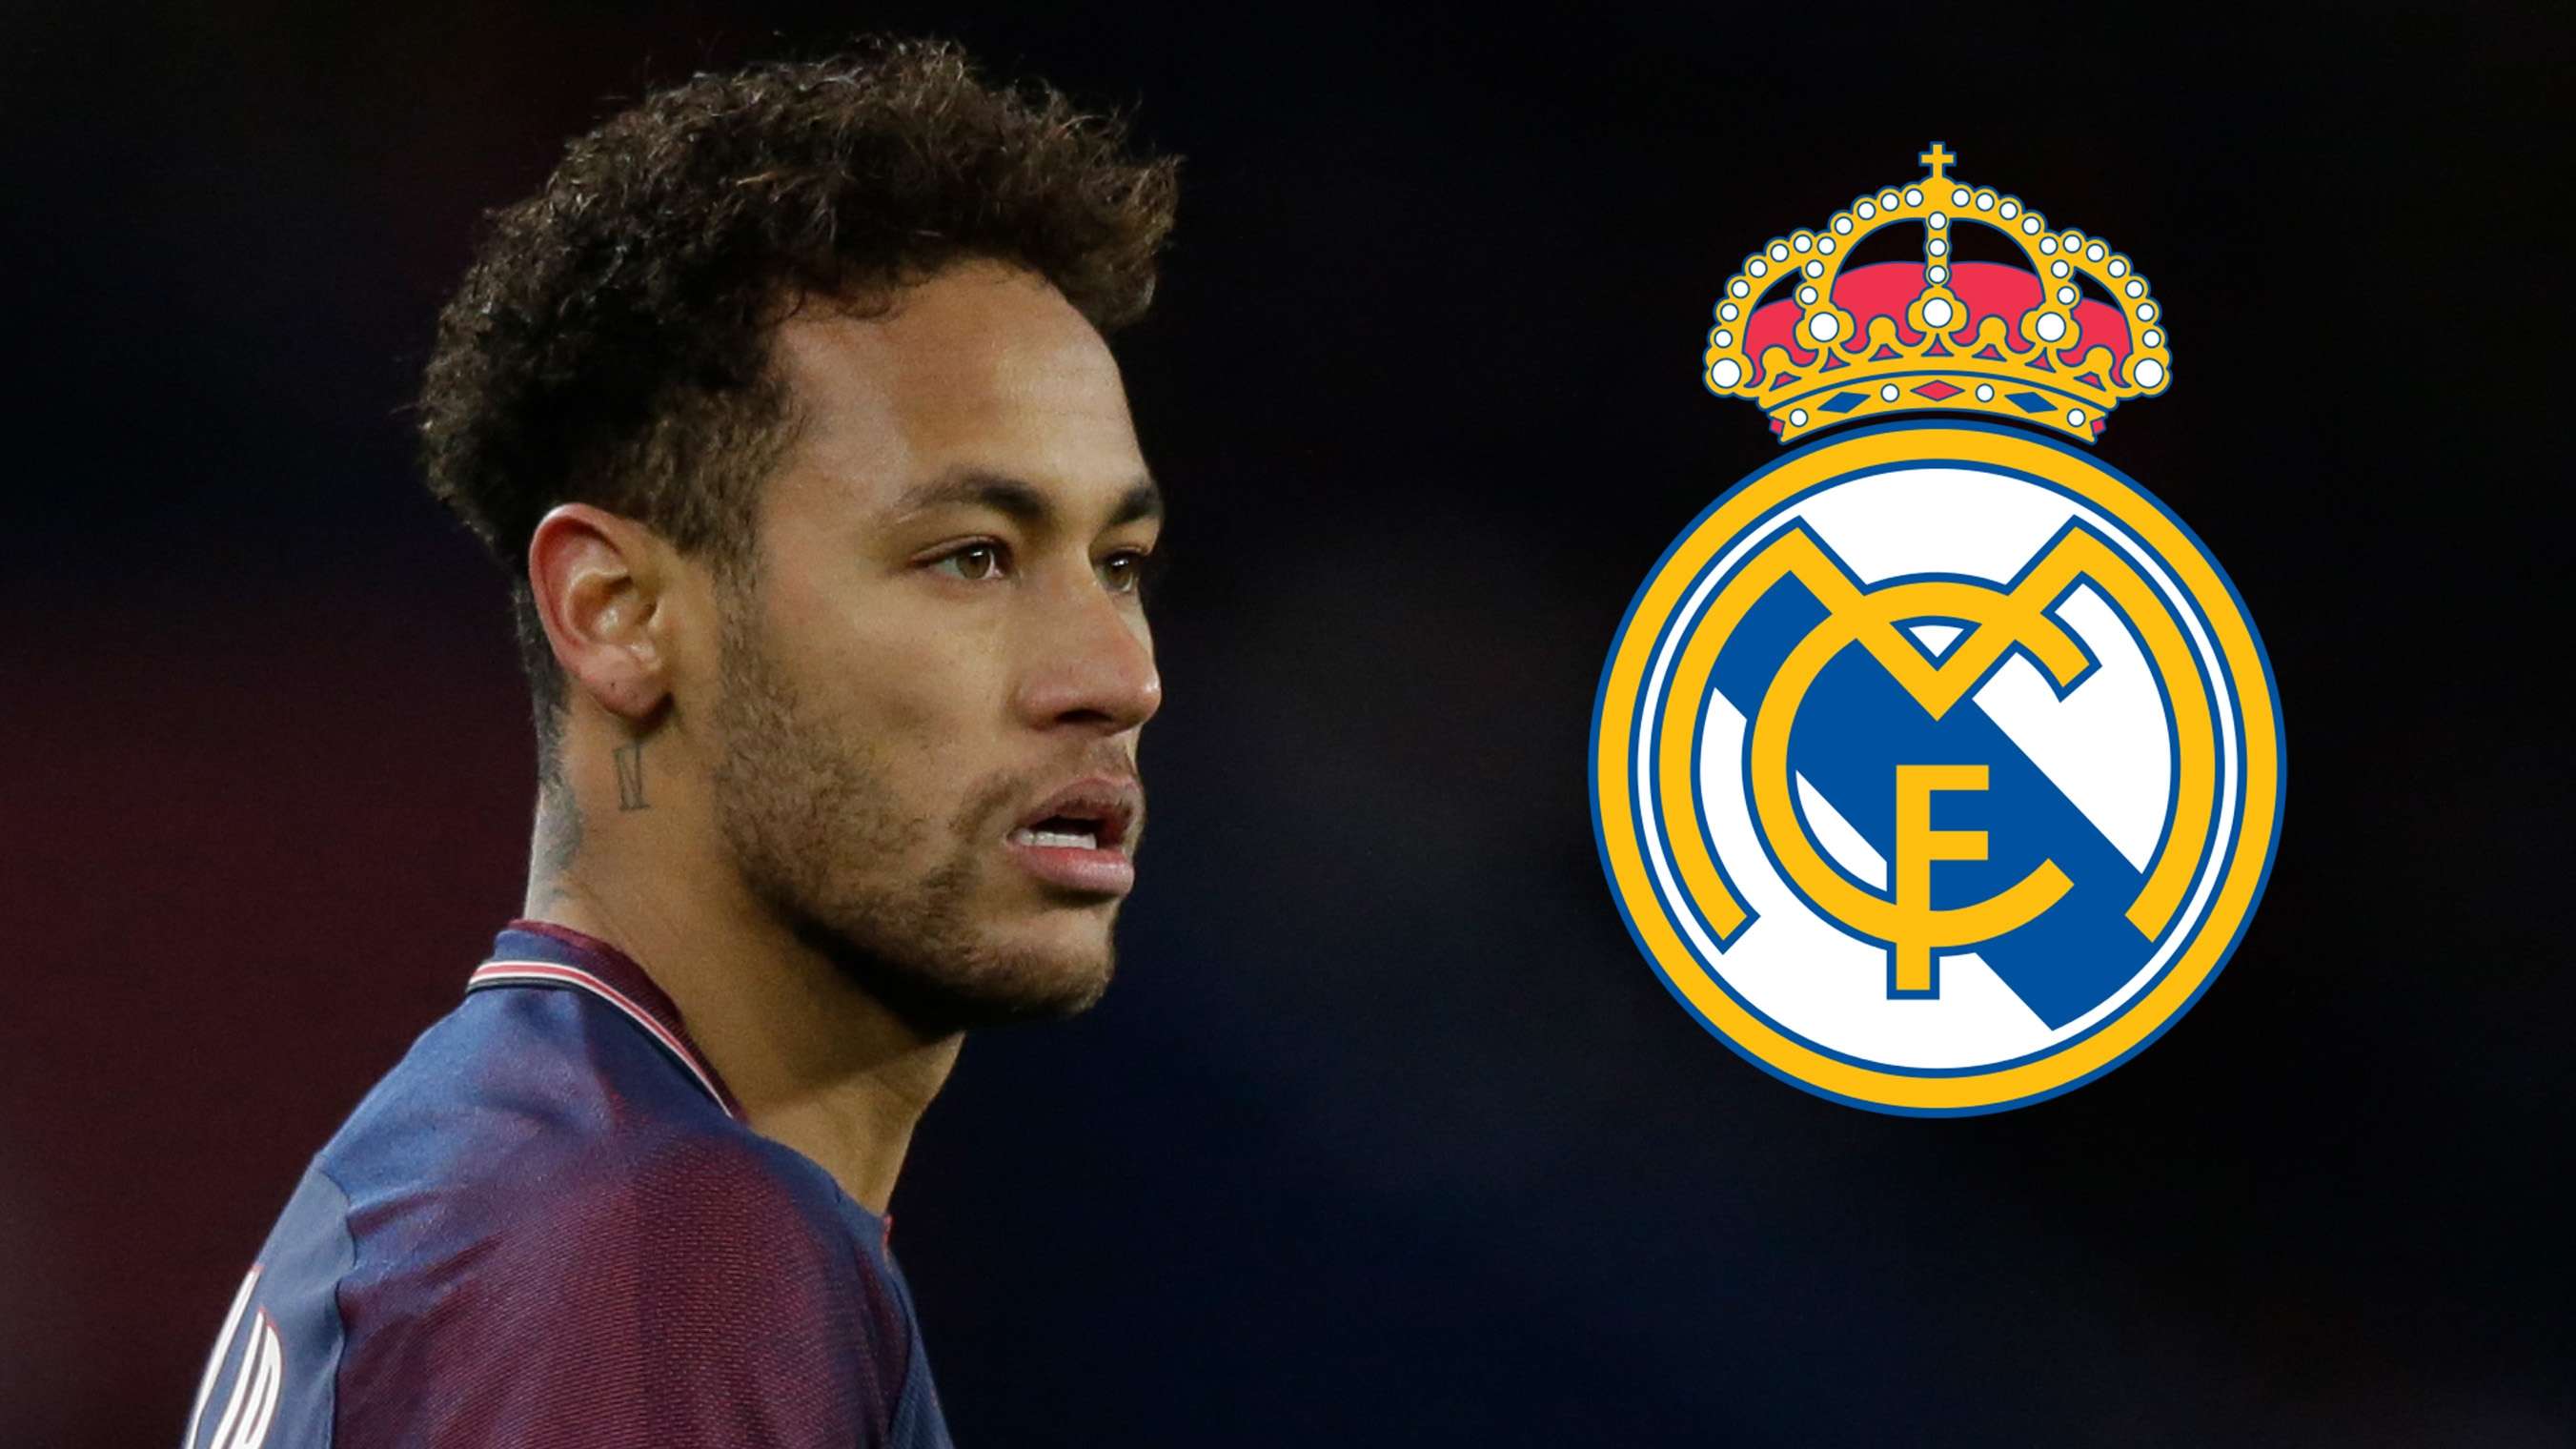 Neymar PSG Real Madrid 2017-18